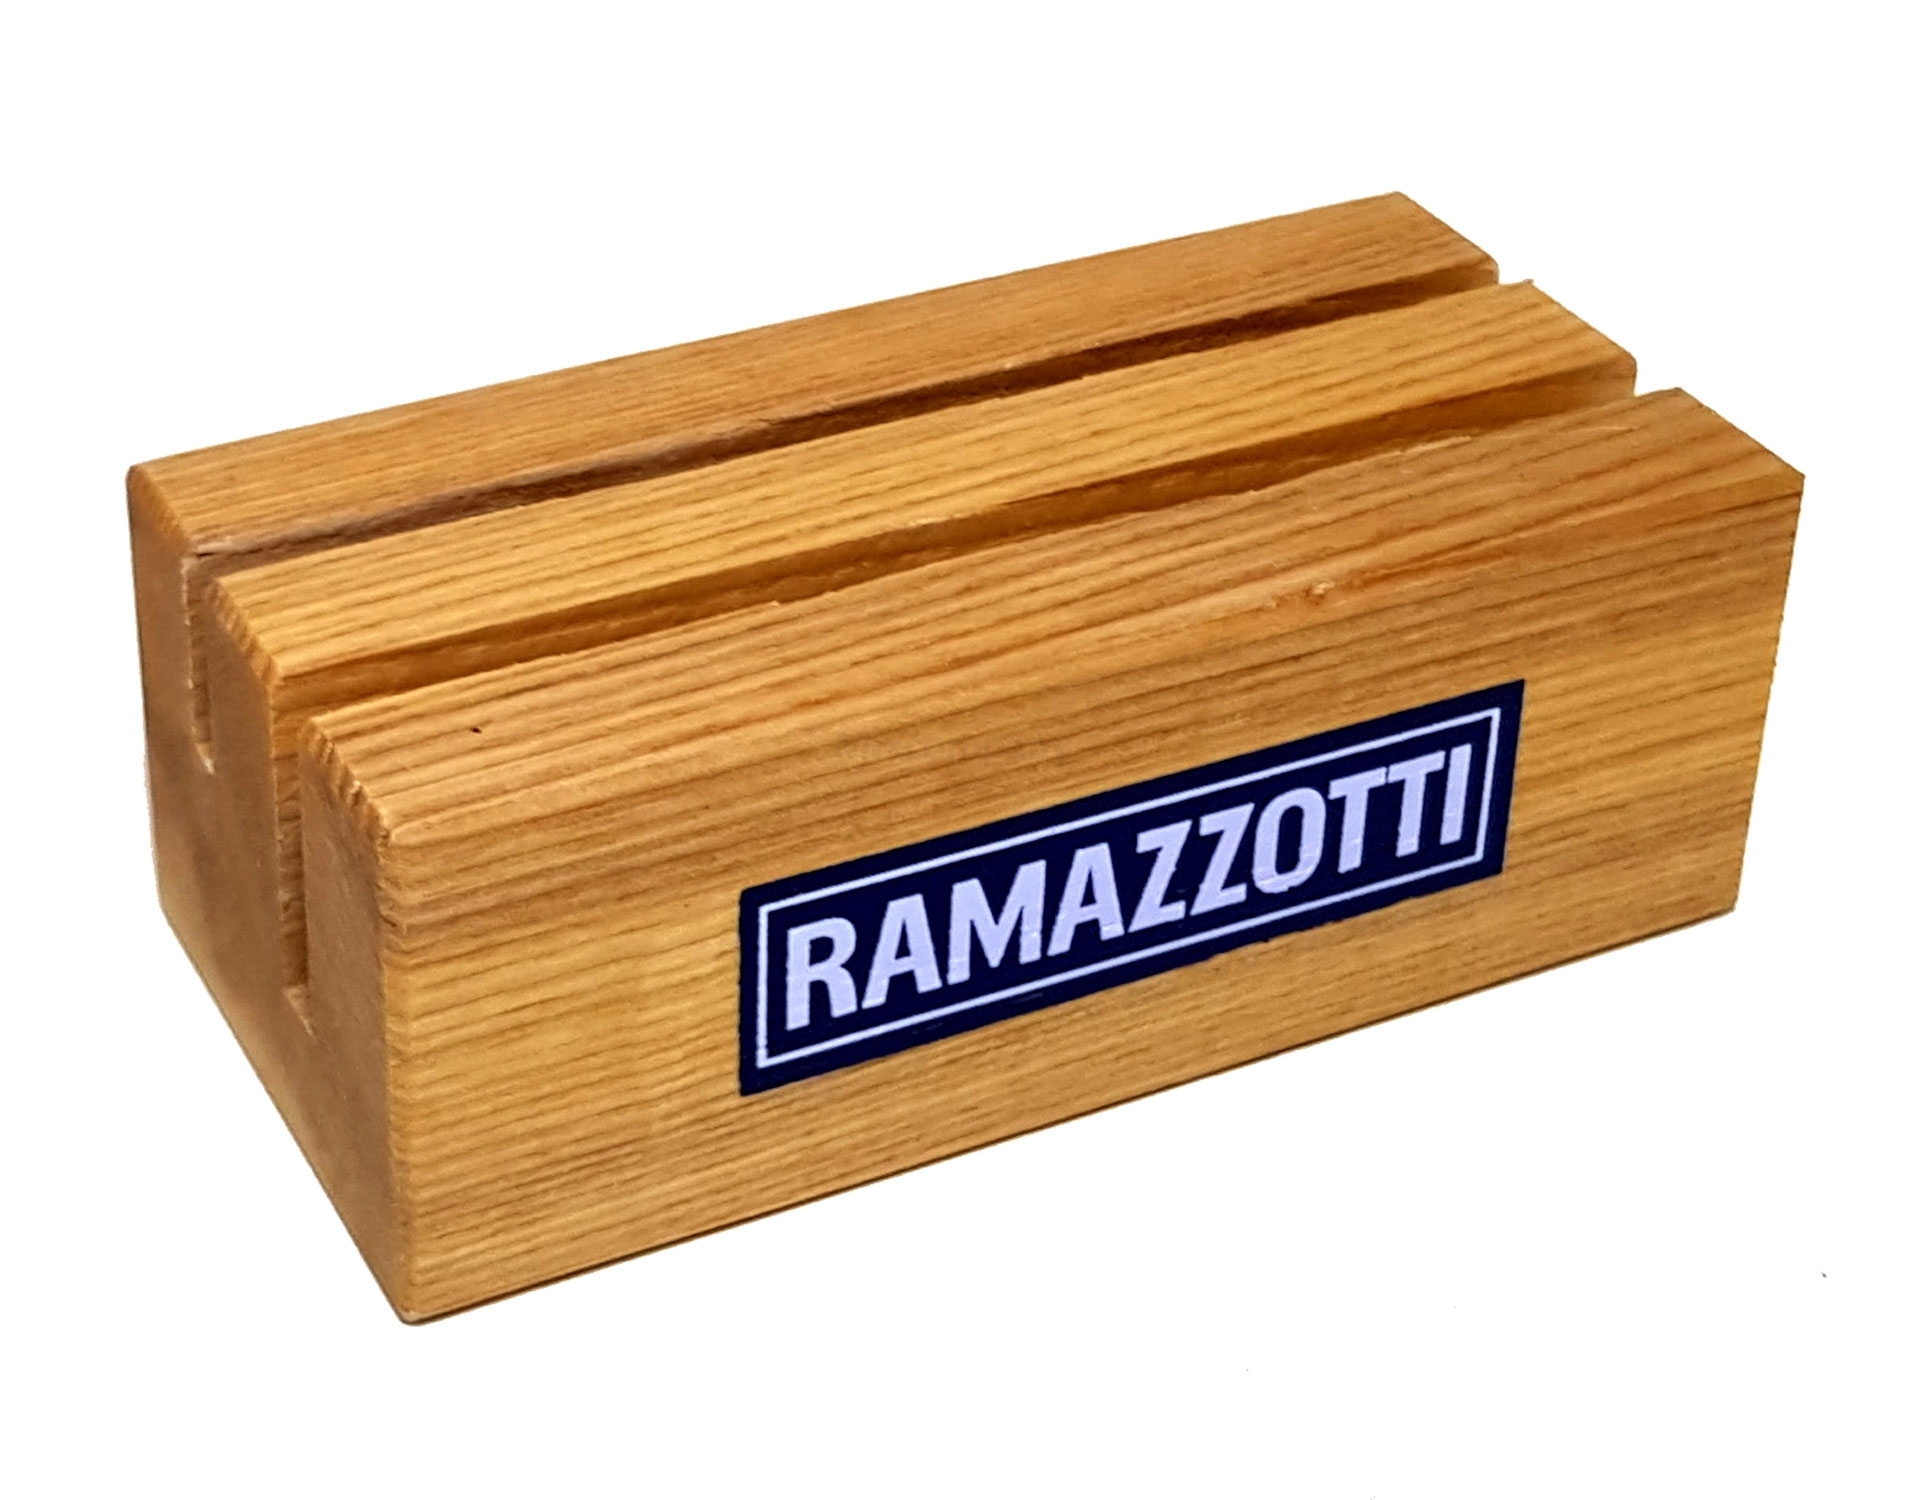 Ramazzotti Halter Kartenständer auf Holz sind zwei verschiedene Schlitze vorhanden, wovon einer mit einem Kunststoffschild bestückt is